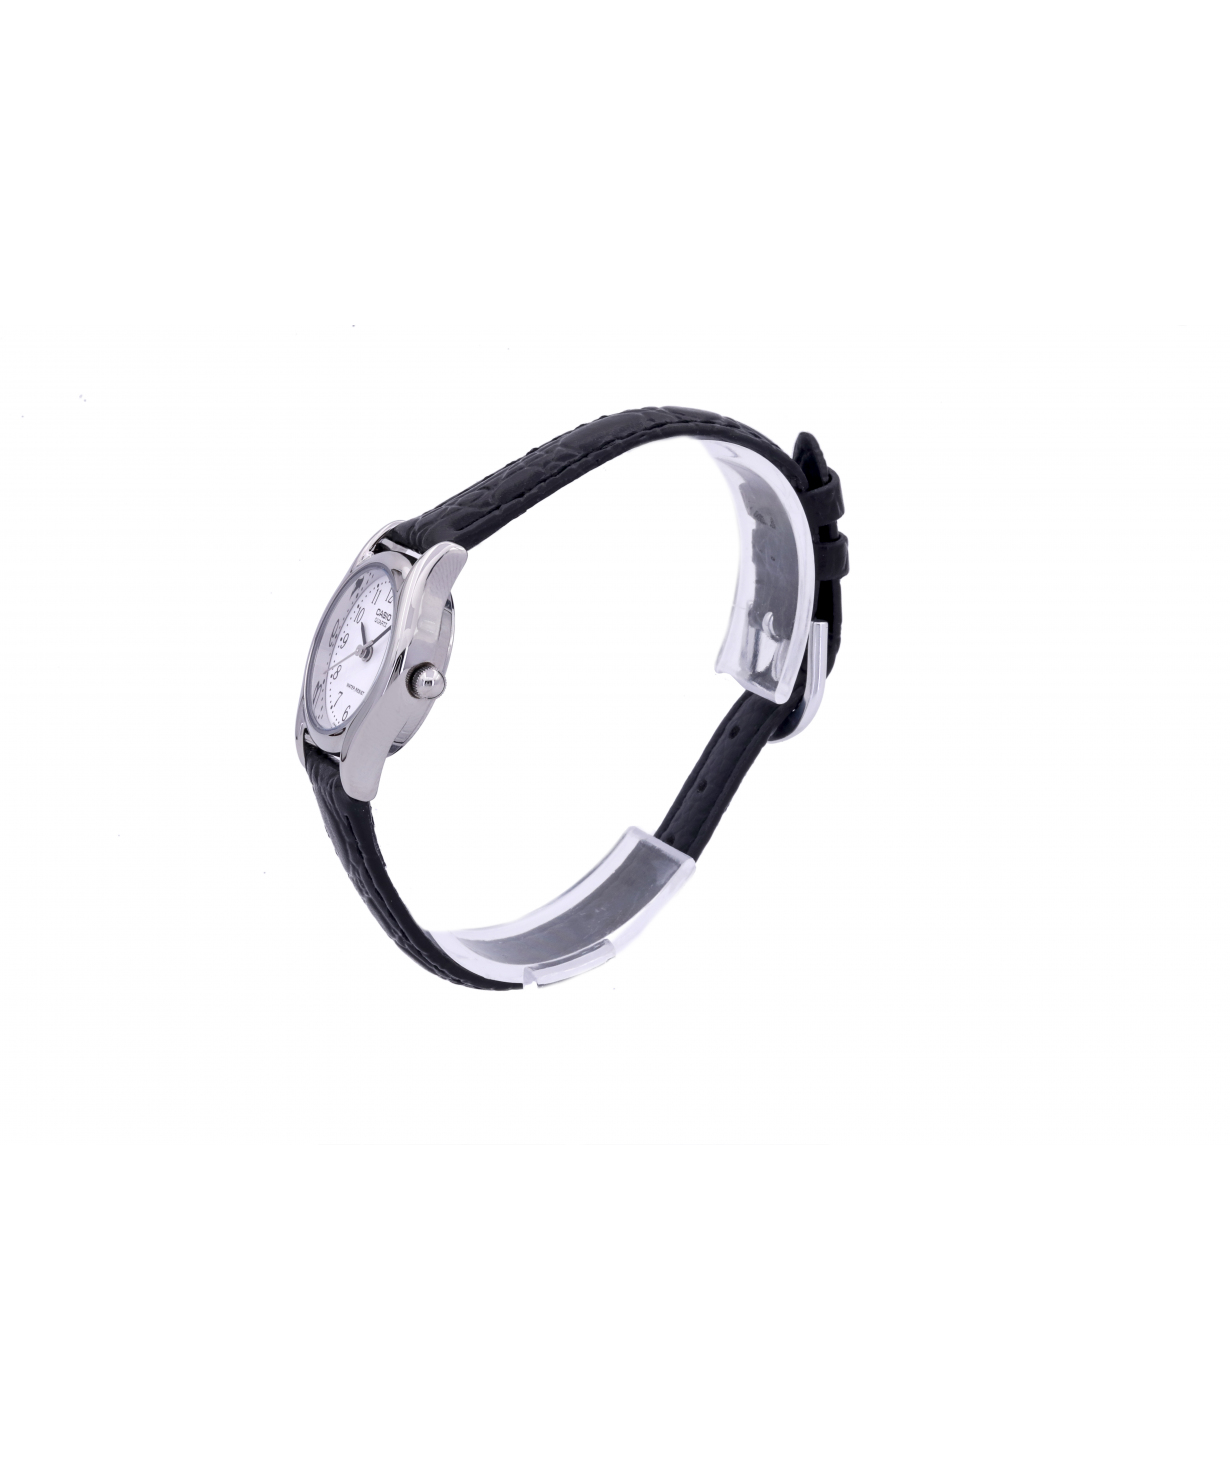 Watches Casio LTP-1094E-7BRDF